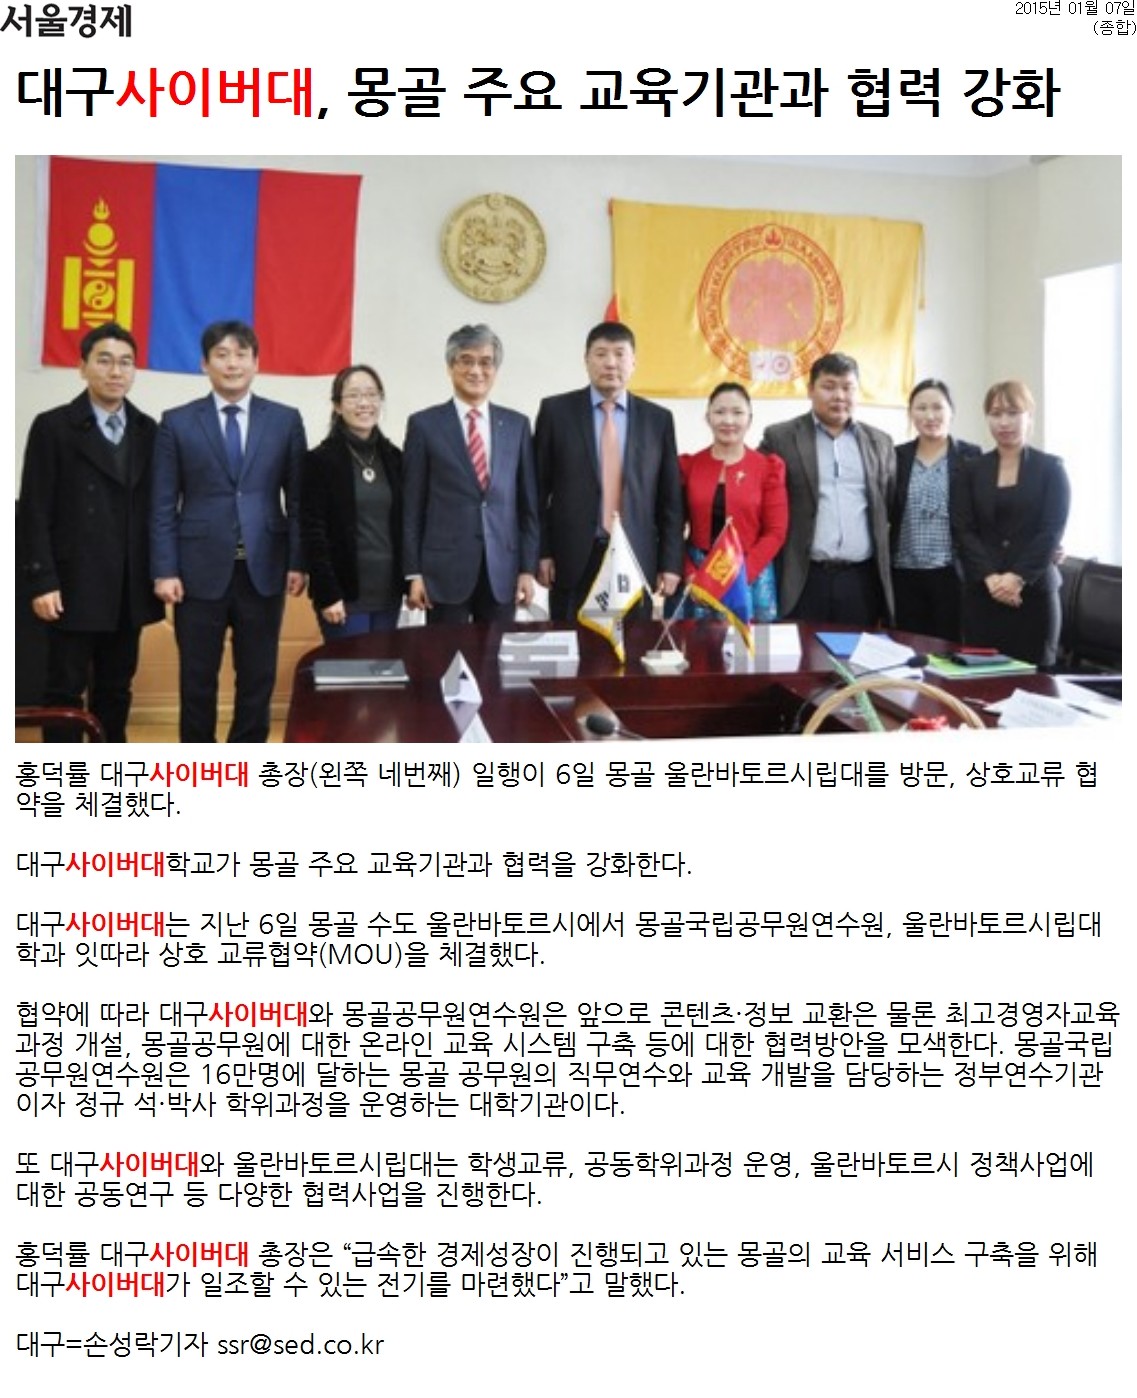 [서울경제] 대구사이버대, 몽골 주요 교육기관과 협력 강화 관련 단체사진